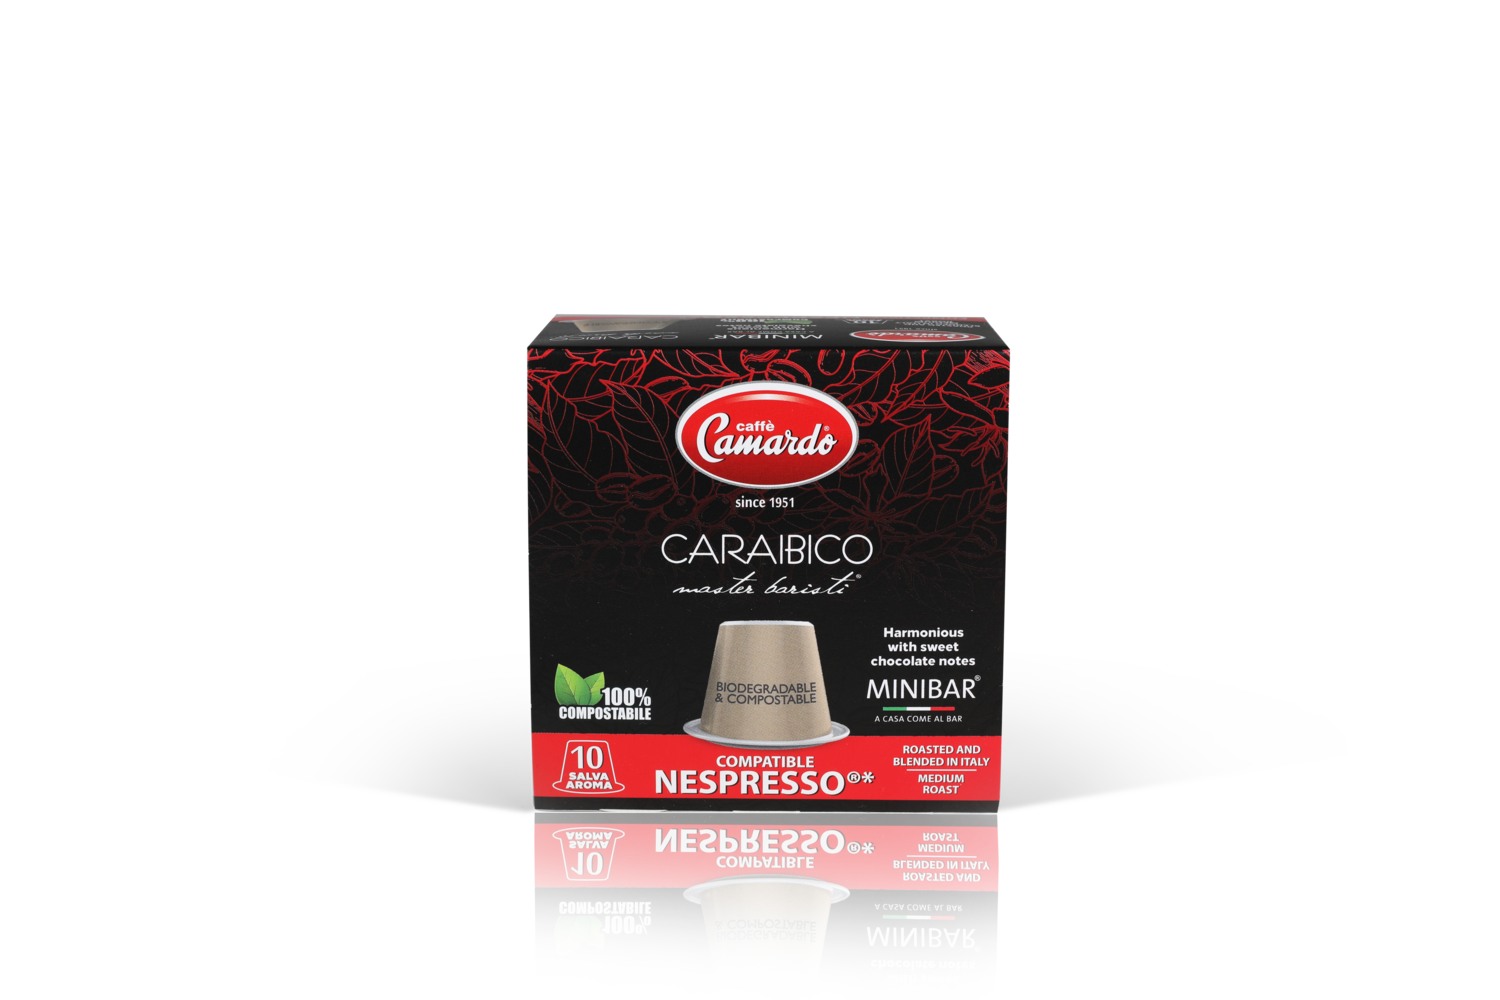 Caraibico, compatible Nespresso®